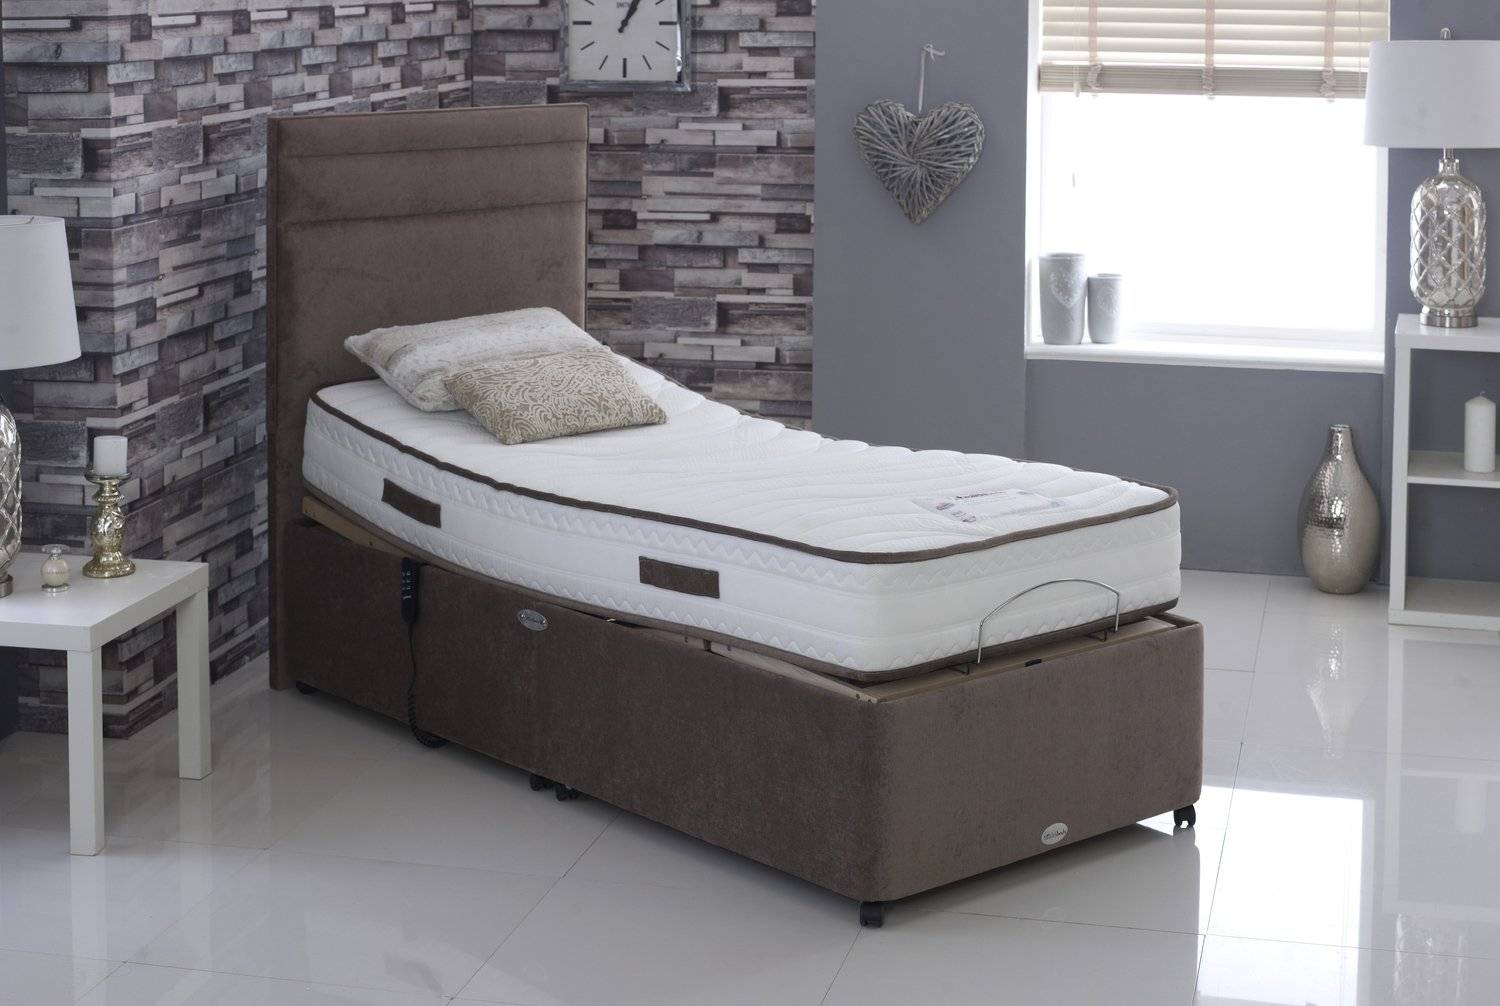 Contourflex Adjustable Bed Collection 90cm Wide x 200cm ...